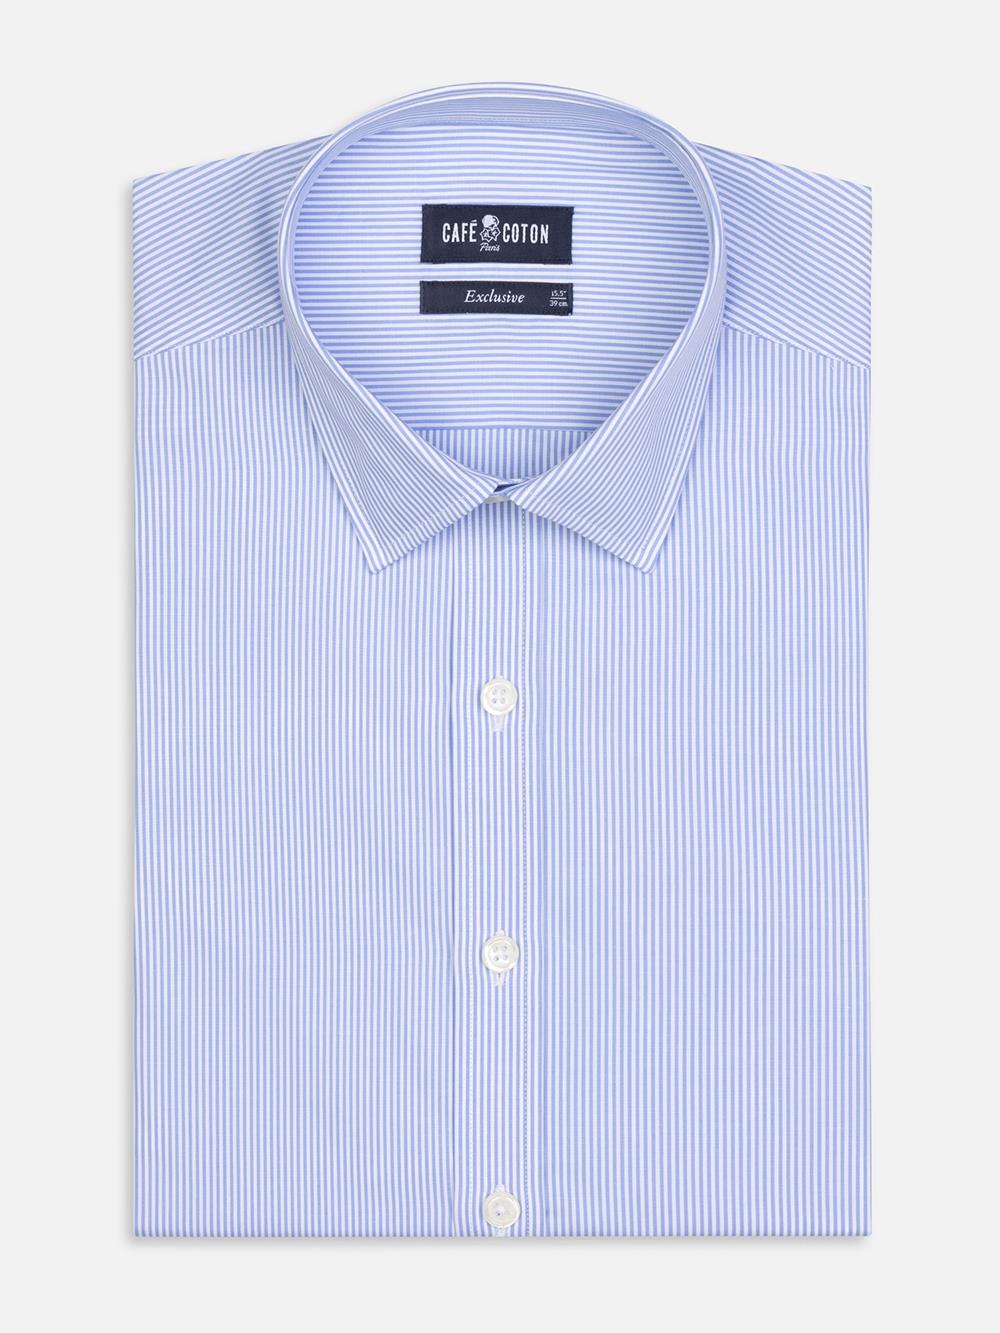 Menthon-Tailliertes Hemd mit himmelblauen Streifen - Kleiner Kragen